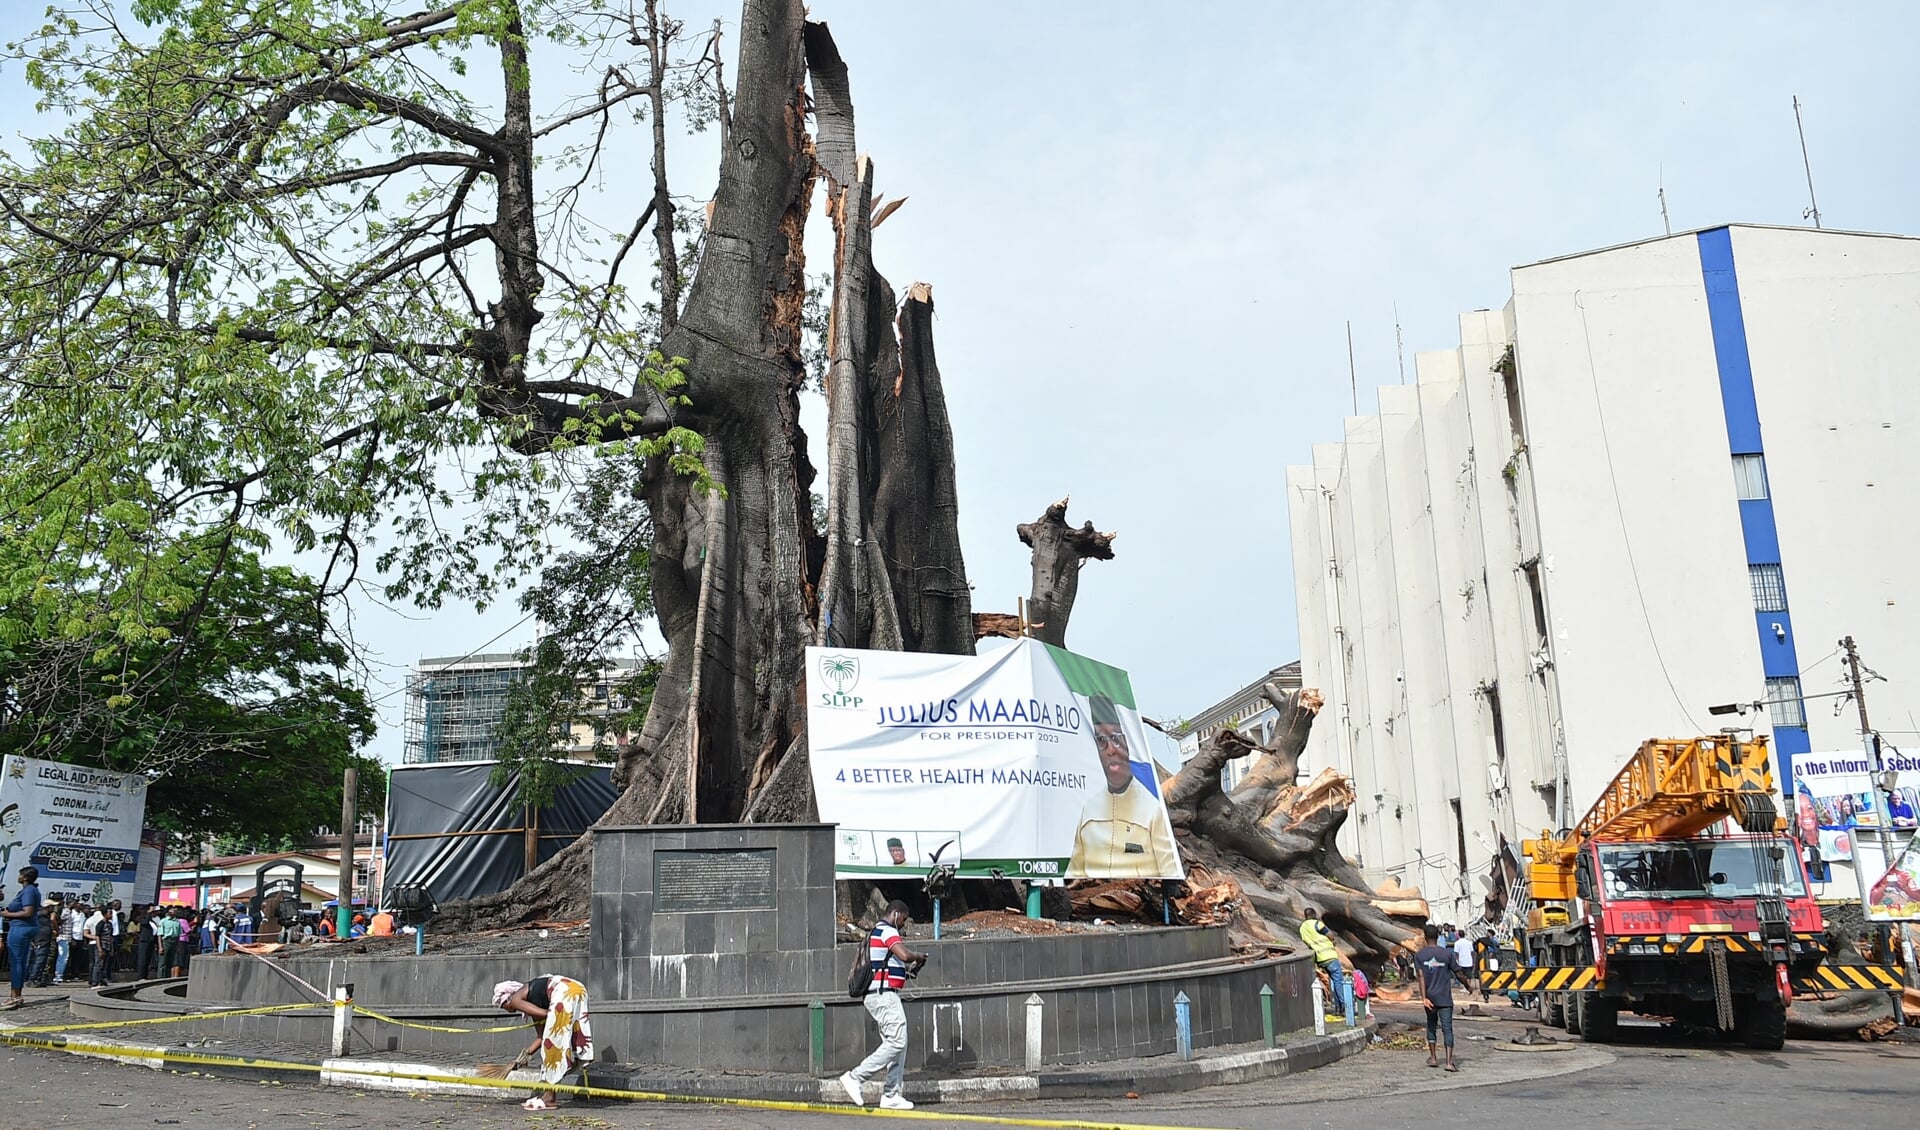 De iconische Cotton Tree in Freetown is omgevallen. De boom werd in het verleden door bevrijde slaafgemaakten gebruikt als plek om bij te vergaderen en te bidden. 